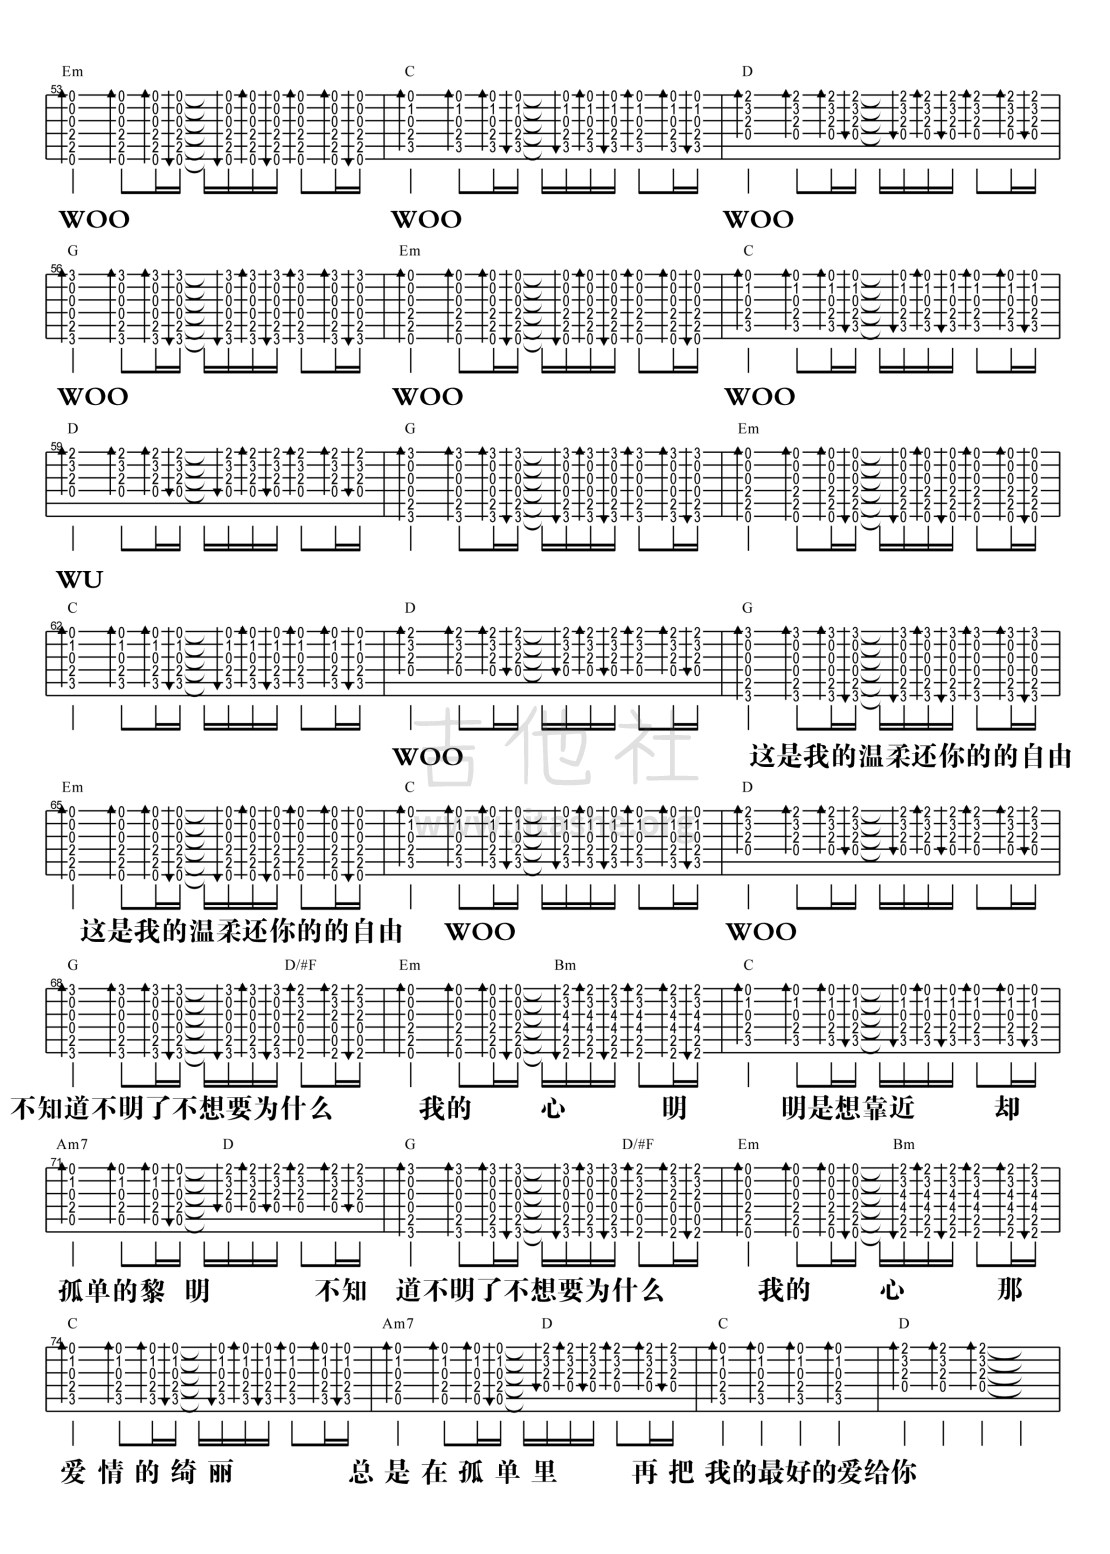 【阿信乐器】#19 五月天《温柔》3DNA版吉他教学吉他谱(图片谱,弹唱)_五月天(Mayday)_温柔·-3.jpg